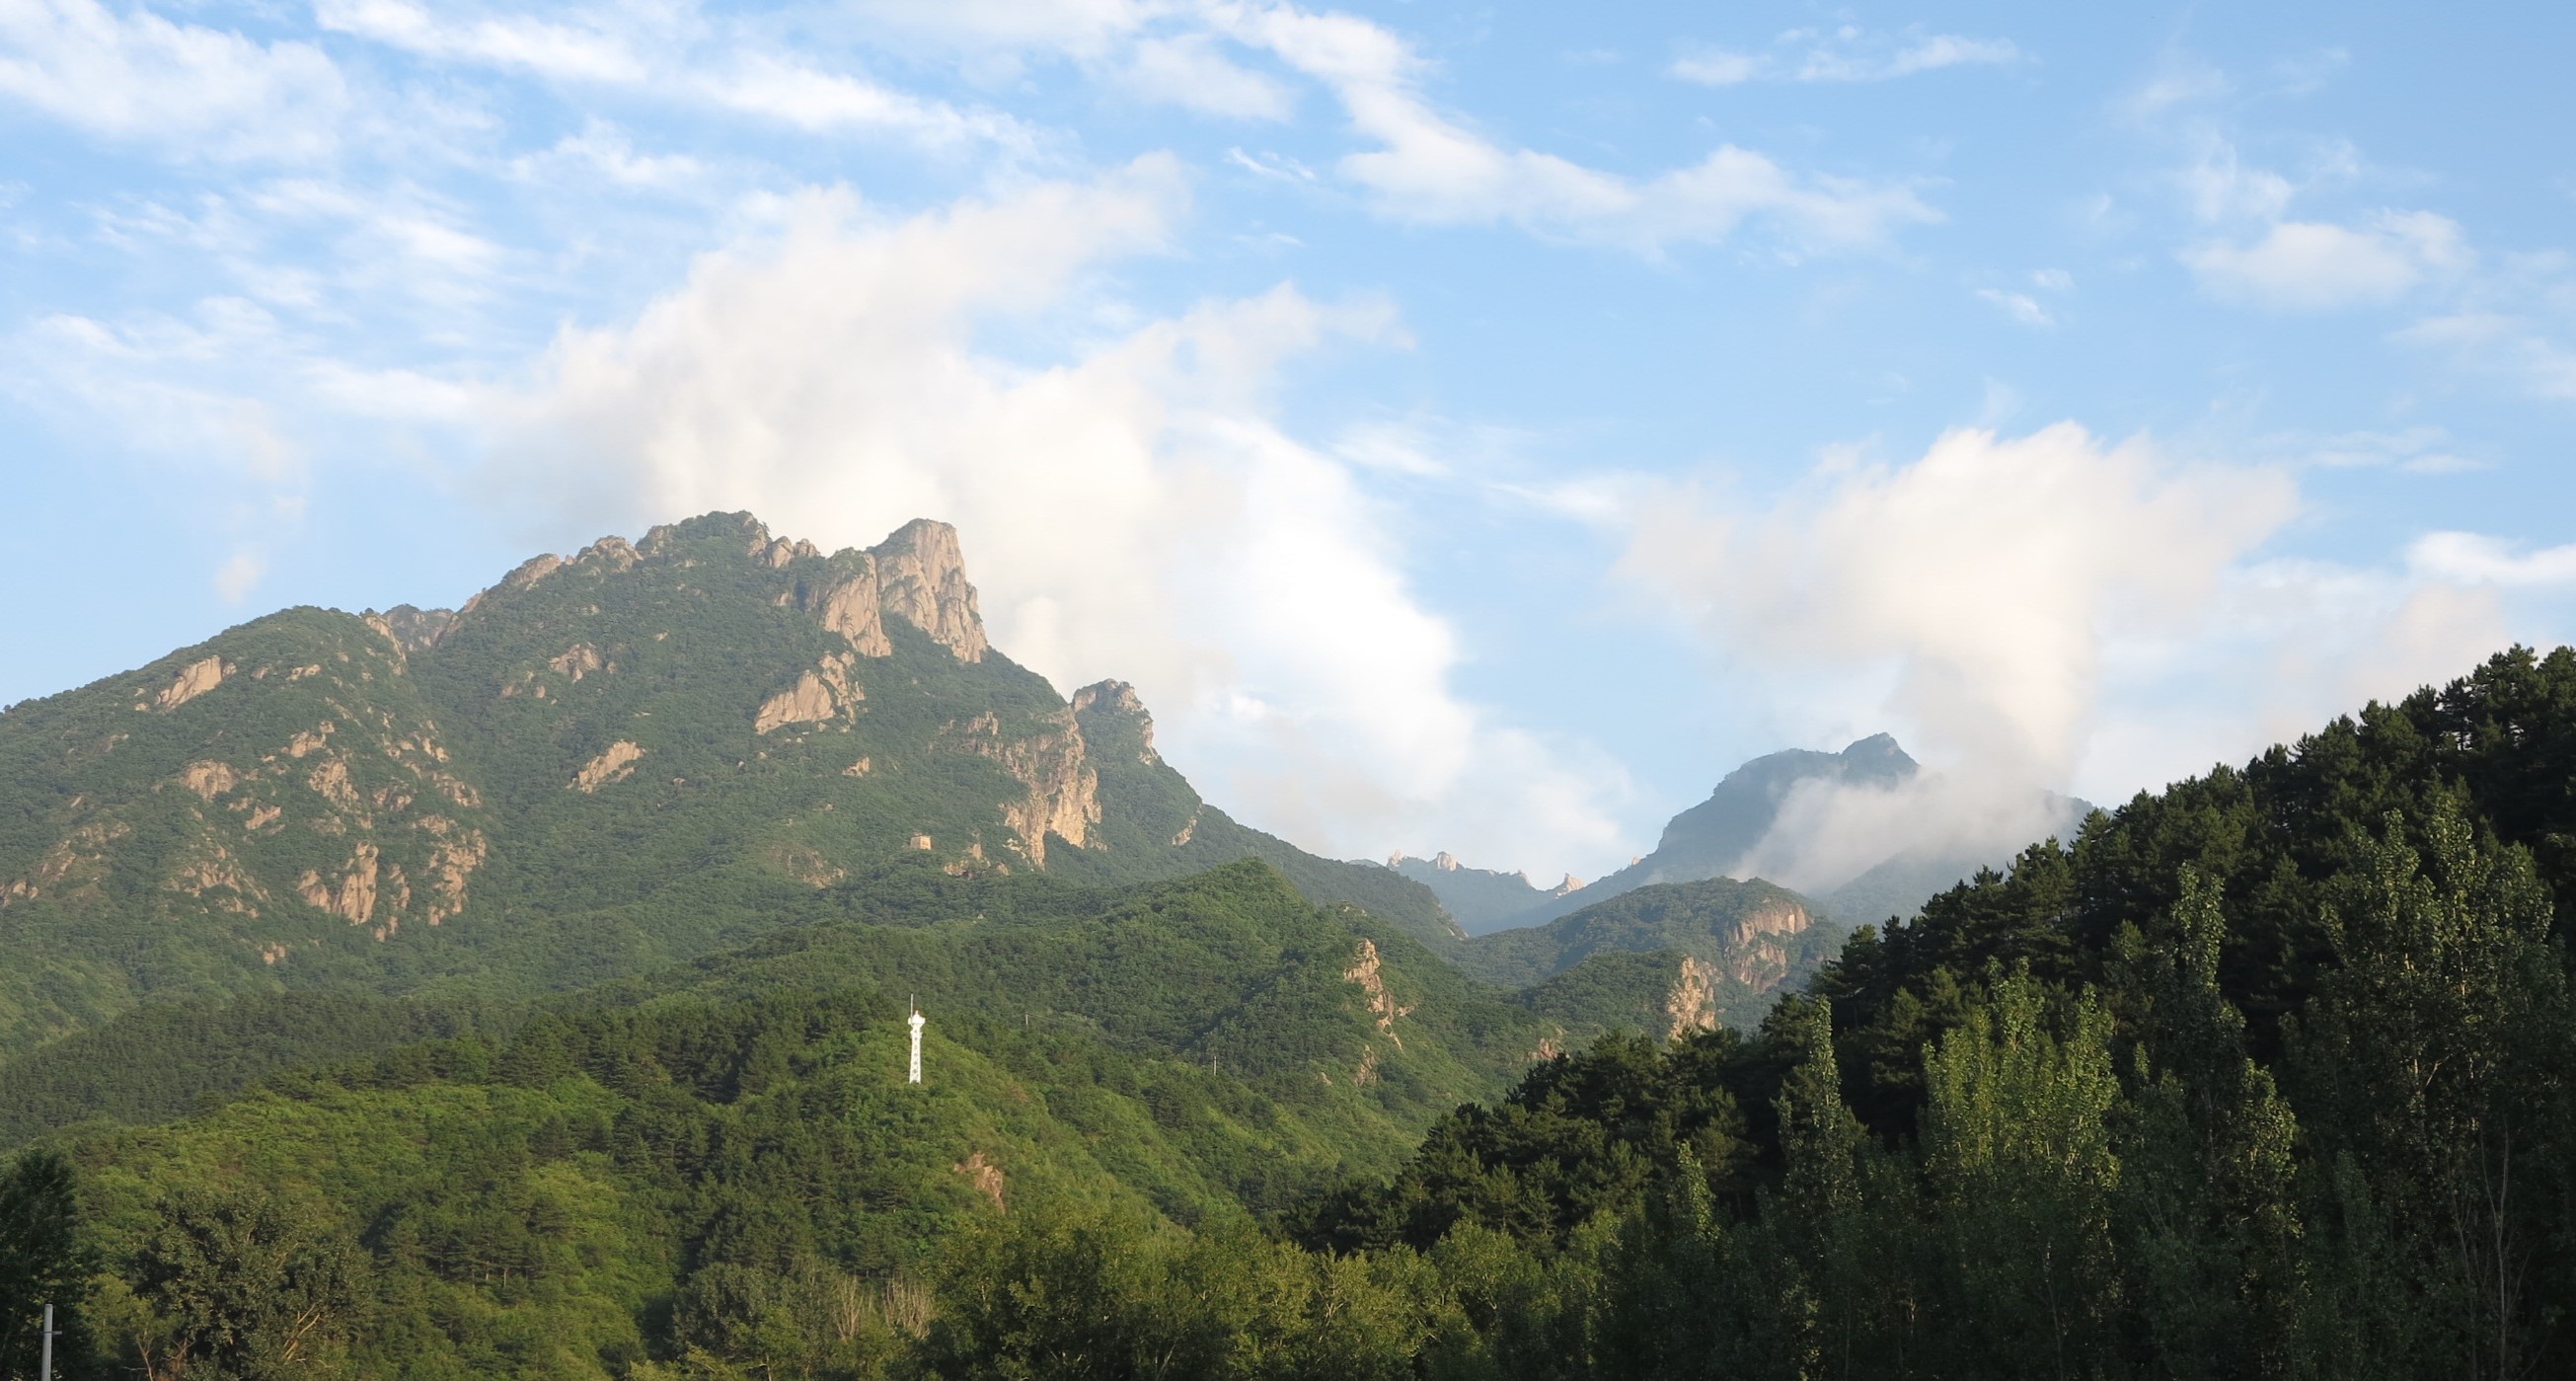 北京密云雾灵山下的遥桥峪村,山美水美古堡美,还是避暑好去处